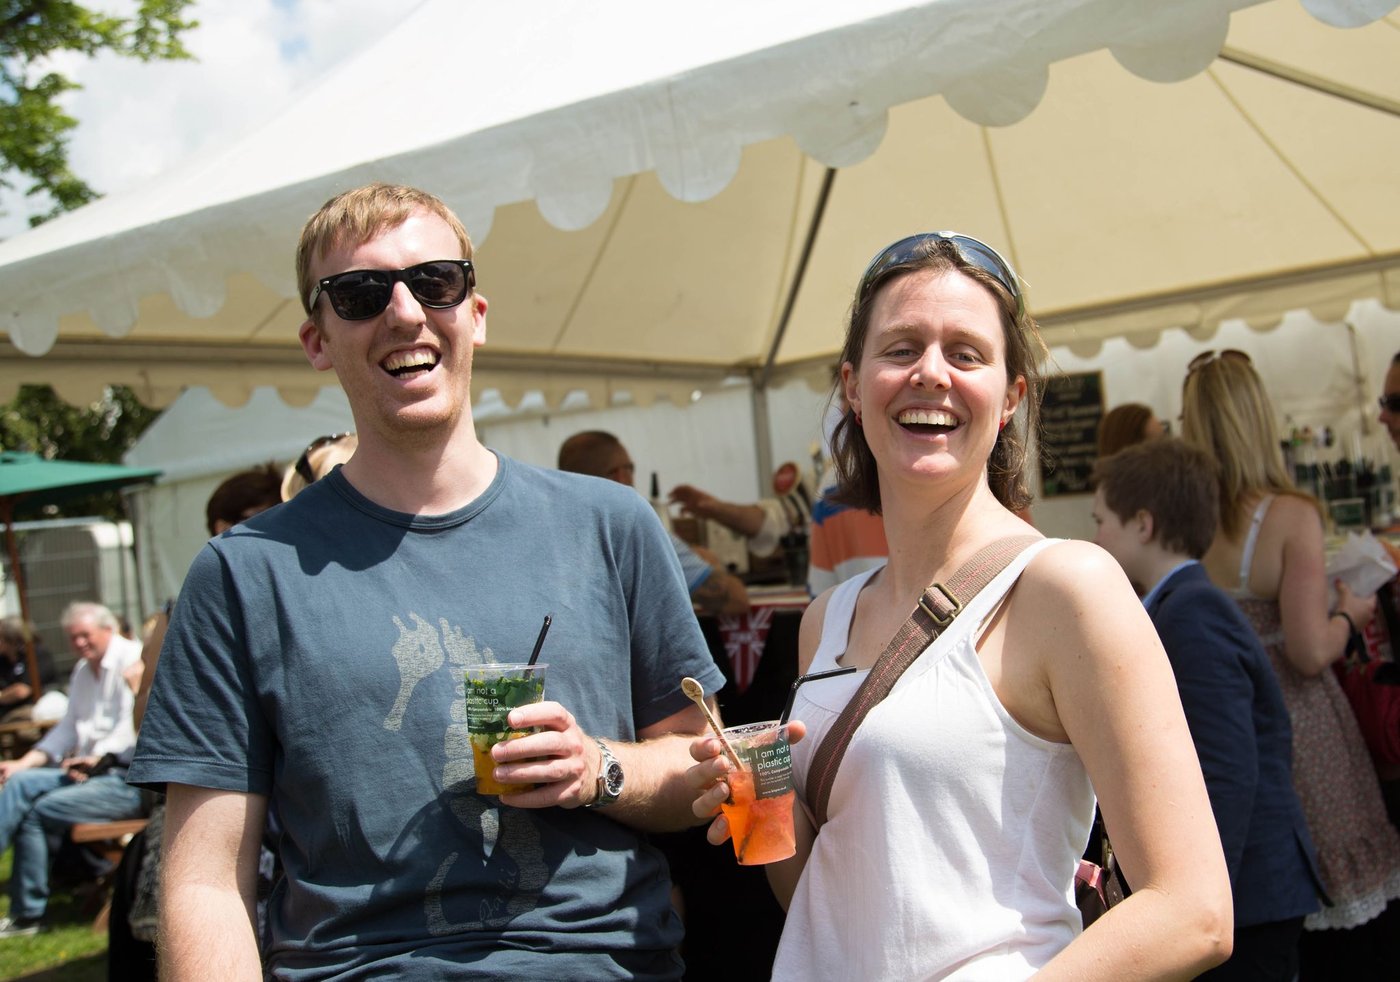 Cheltenham Food & Drink Festival